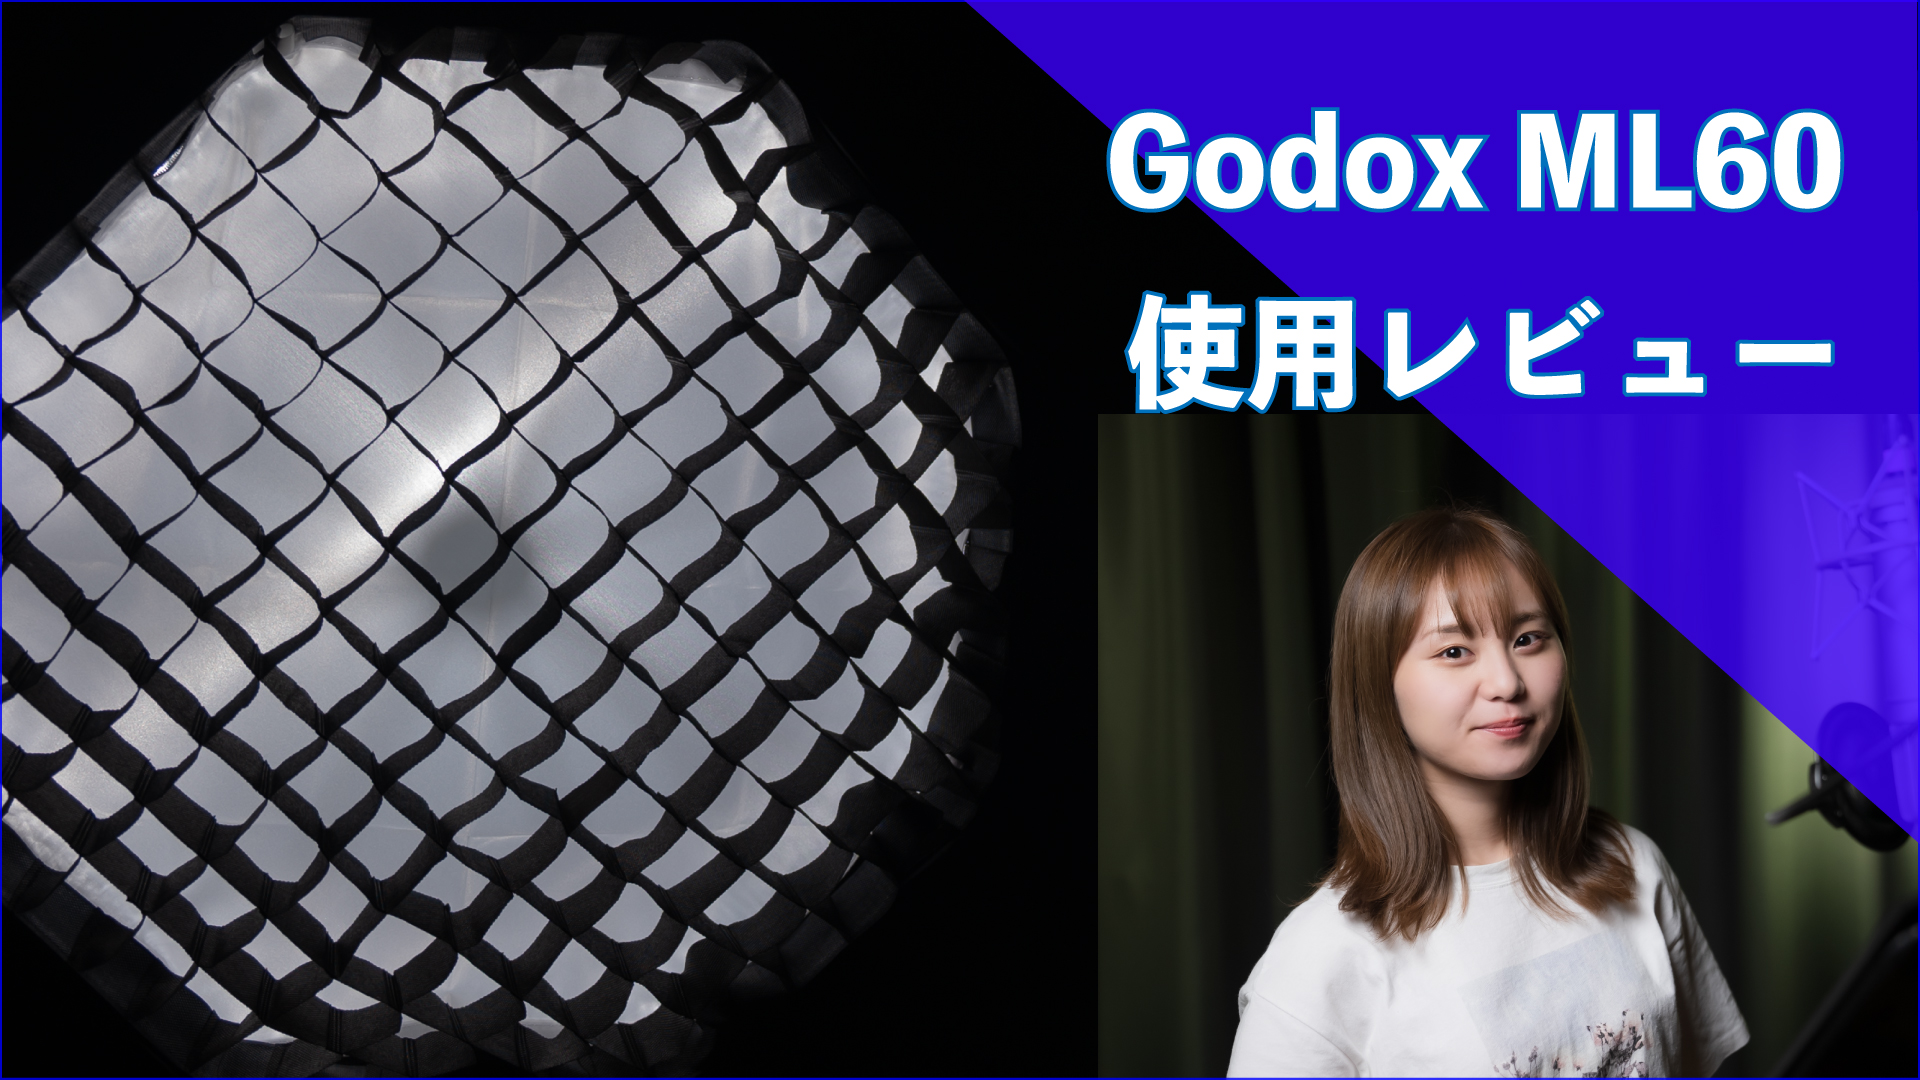 激安ビデオライト「Godox ML60」 のソフトボックス・キット【使用 